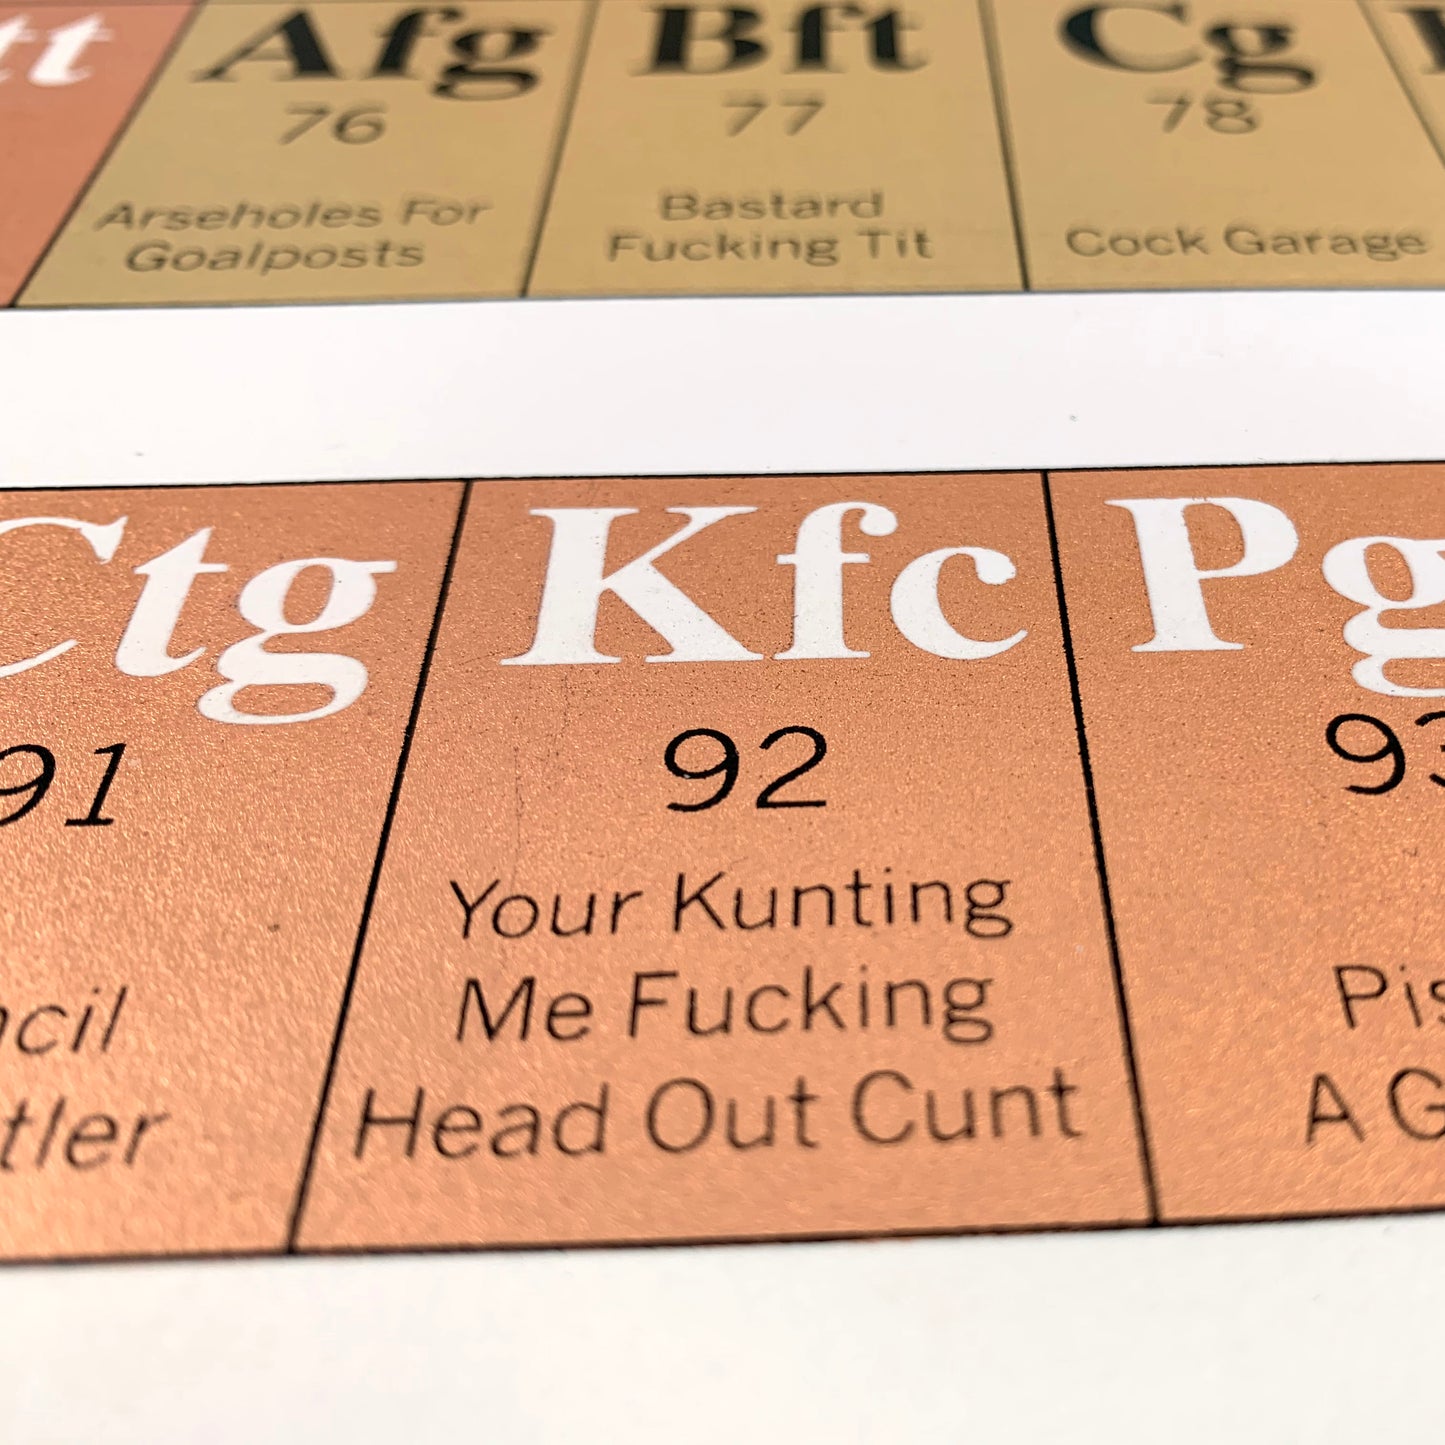 Periodic Table of Swearing Print